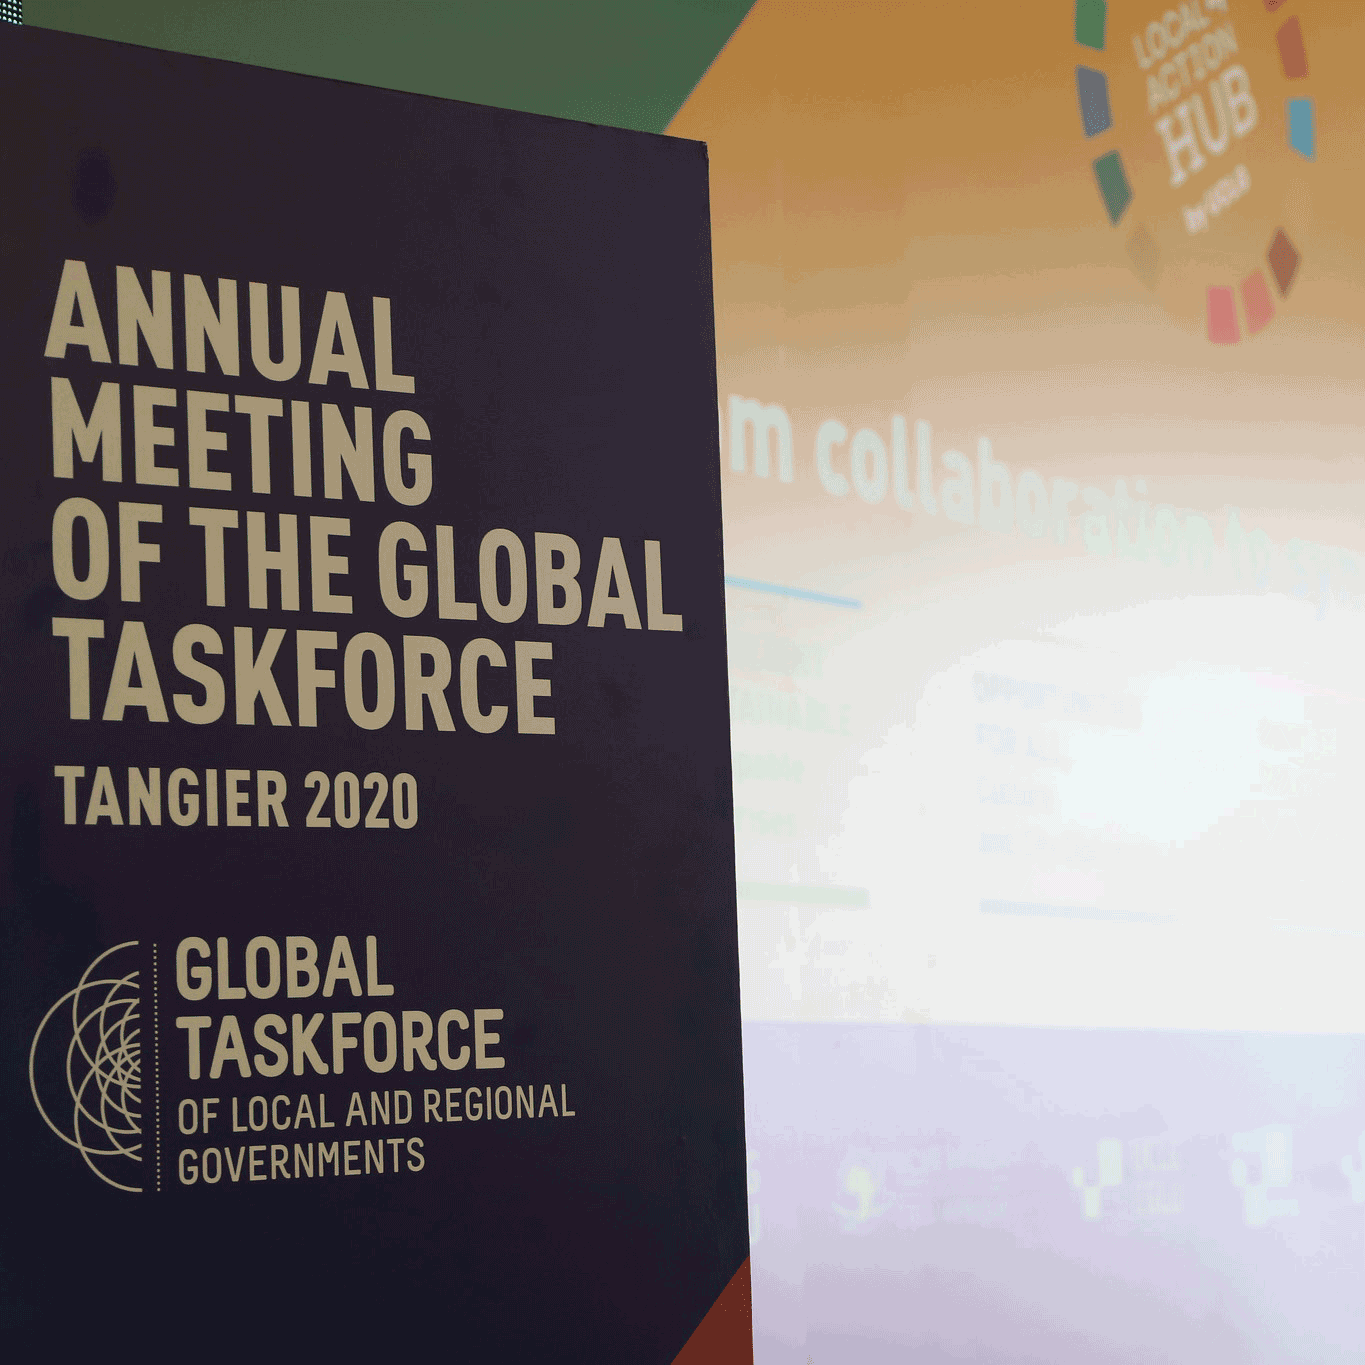 Annual Meeting of Global Taskforce